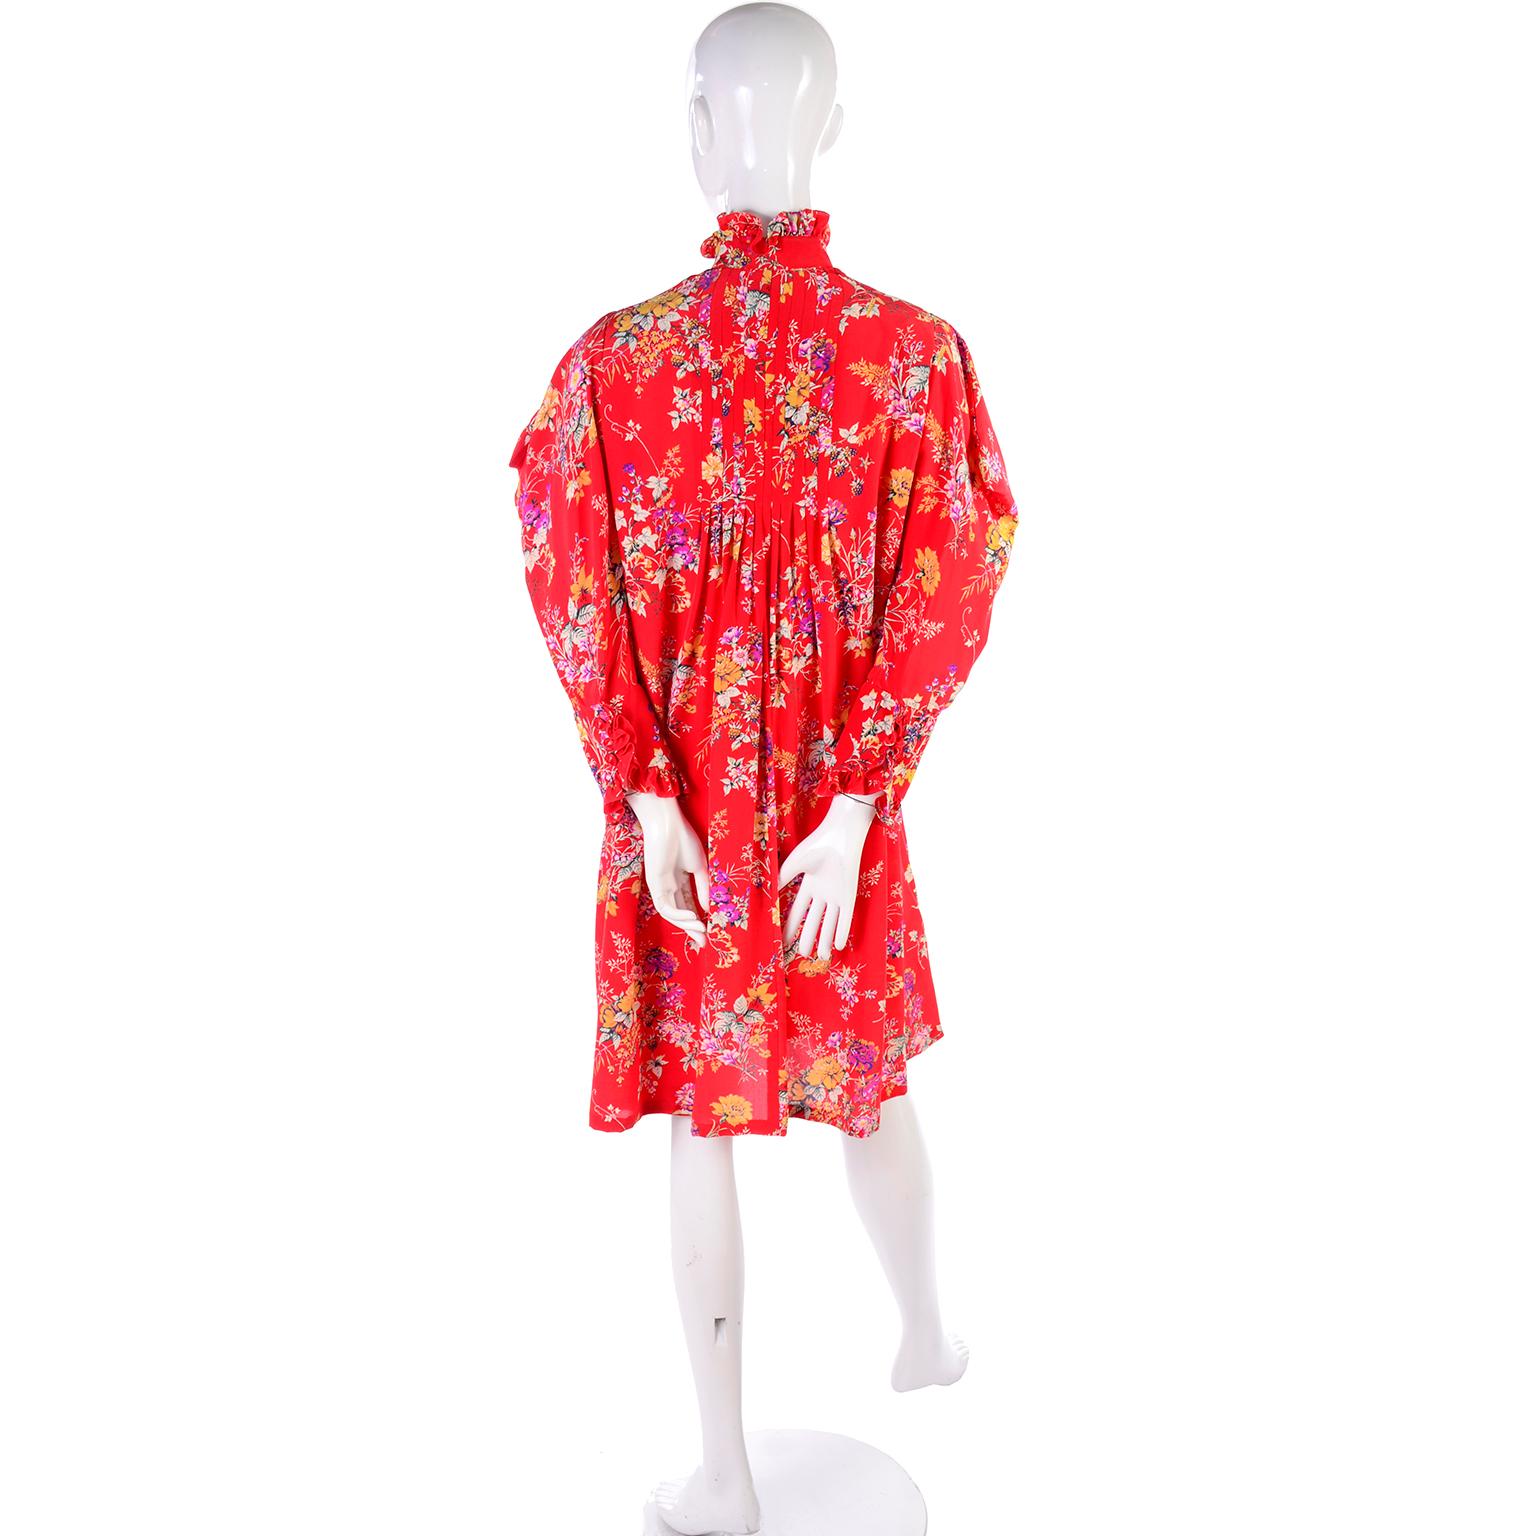 Vintage Emanuel Ungaro Dress in Red Floral Silk W High Neck & Dramatic Shoulders 3